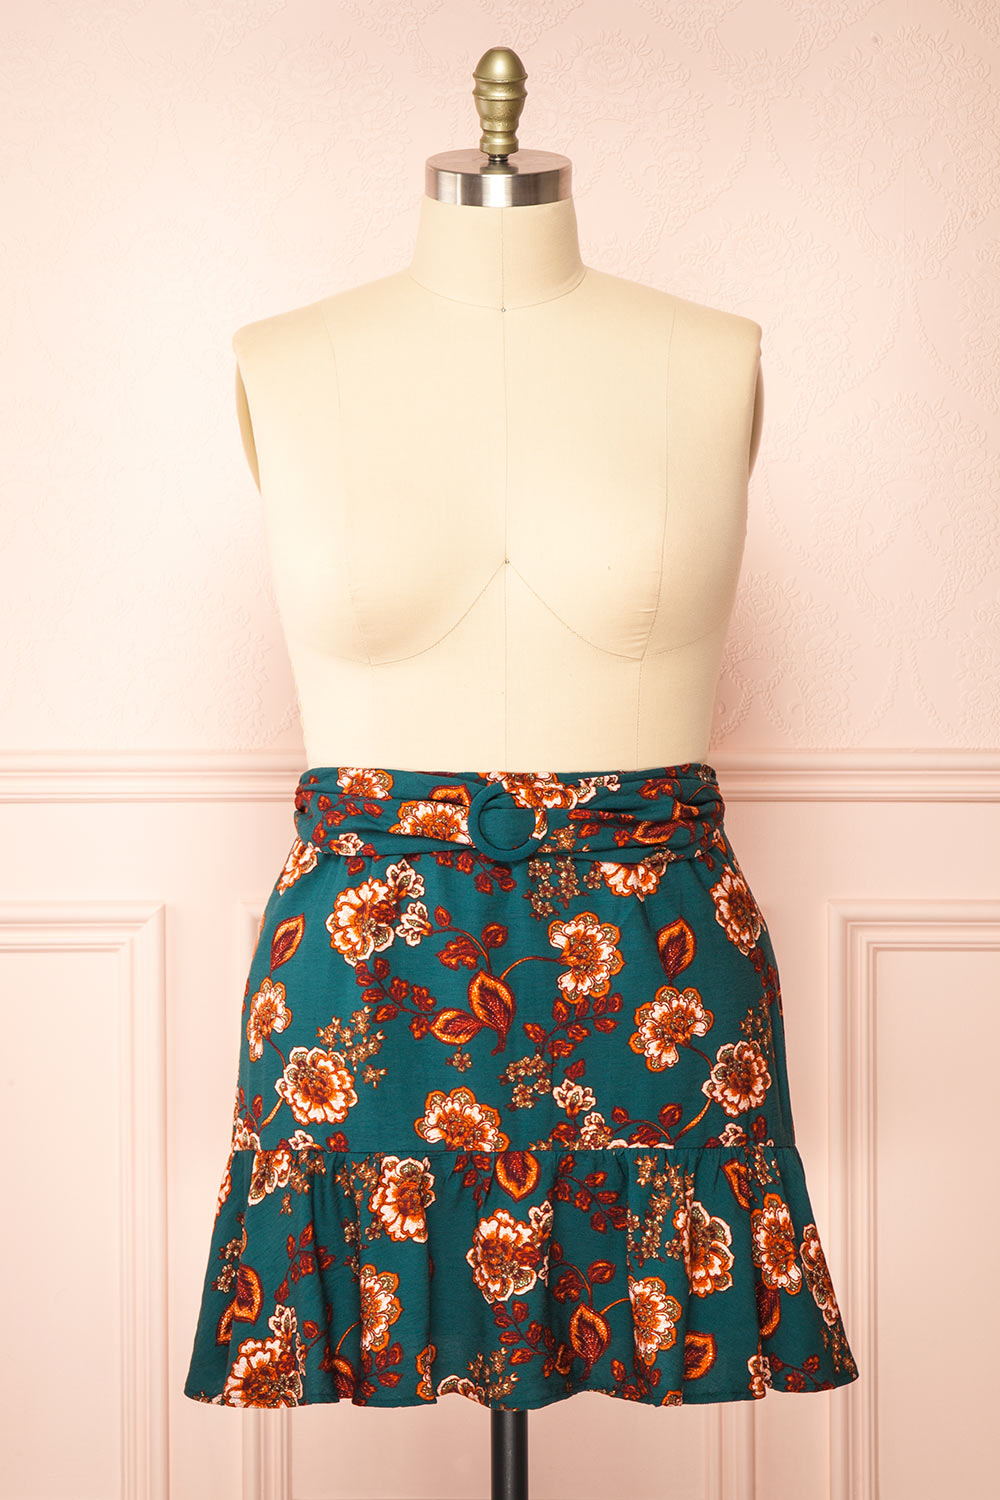 Elora Short Floral Skirt w/ Ruffles | Boutique 1861 front plus size 